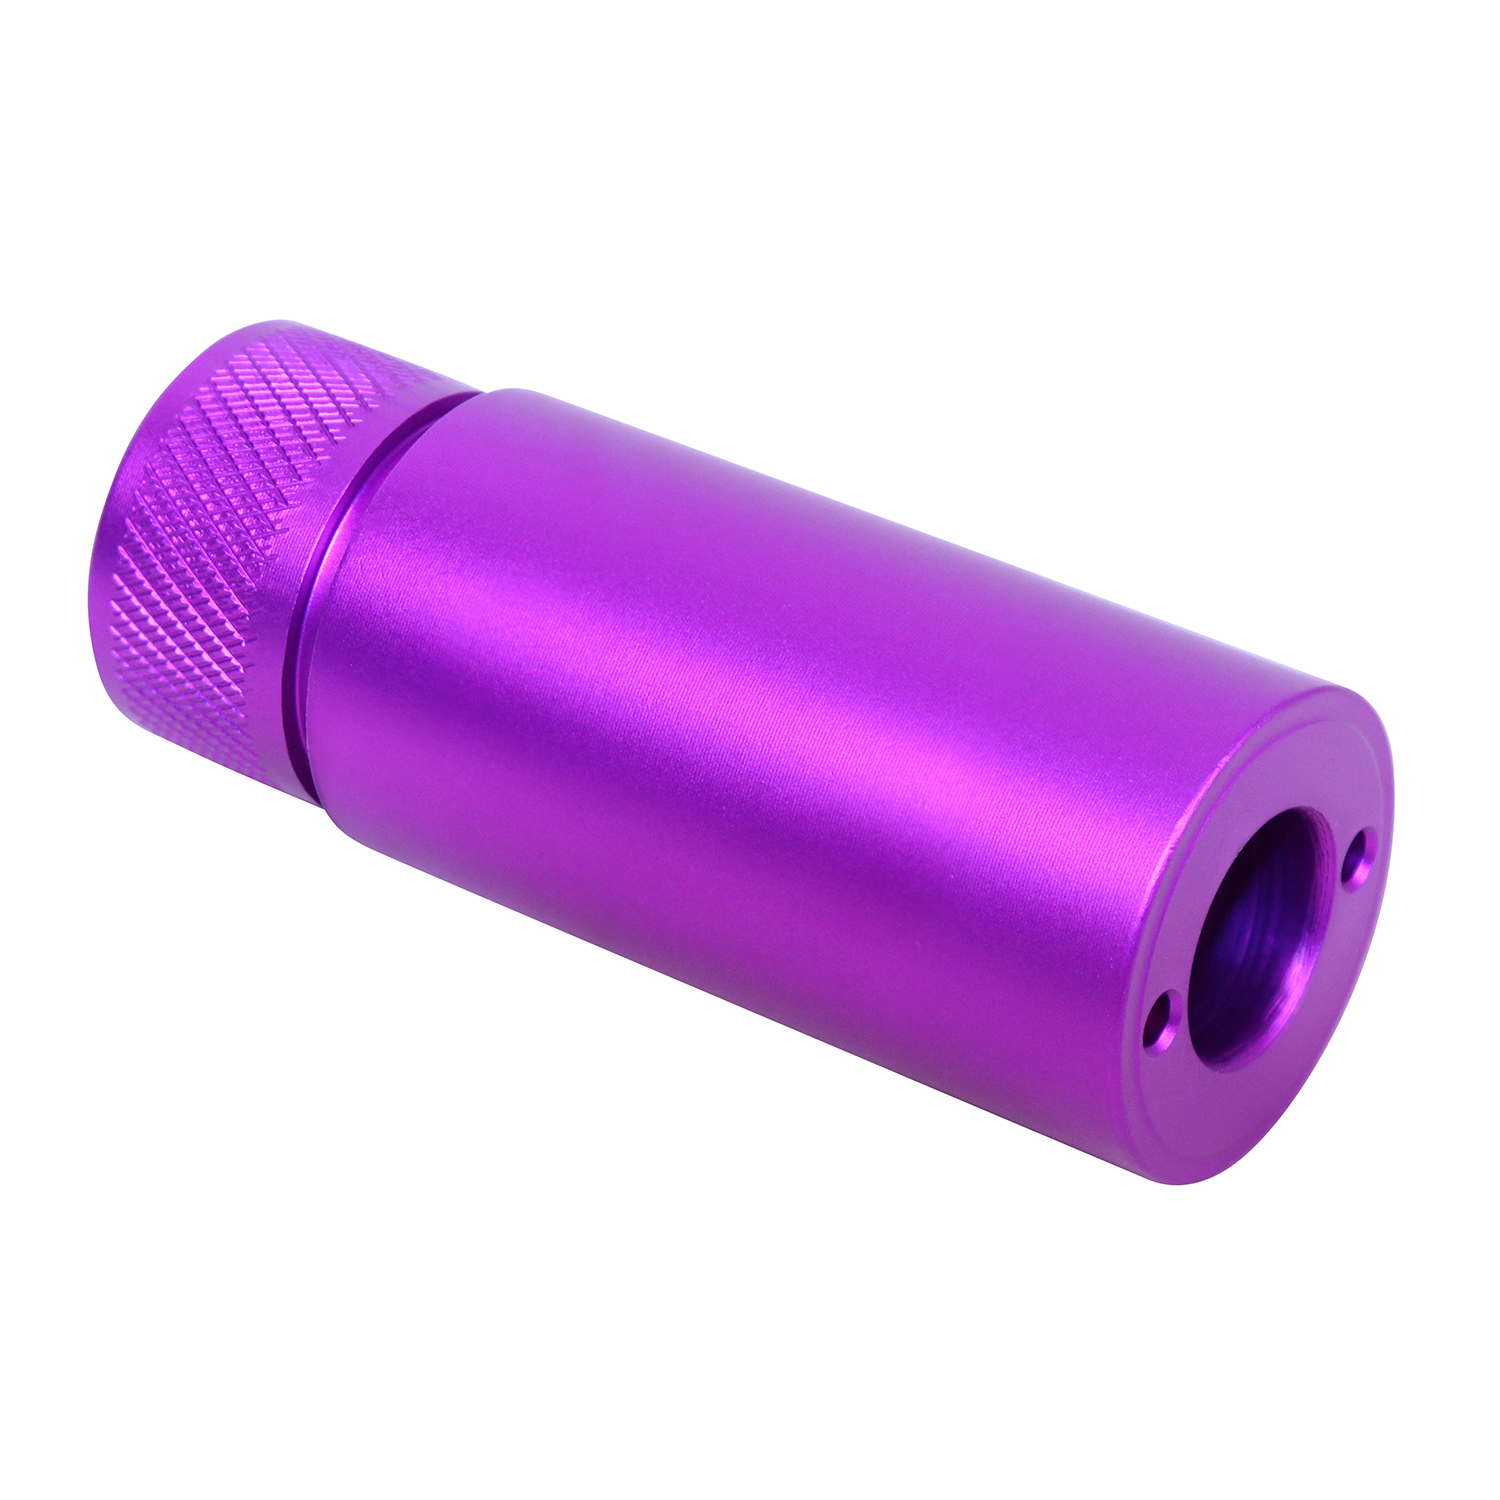 Anodized purple AR-10 .308 caliber 3-inch fake suppressor.